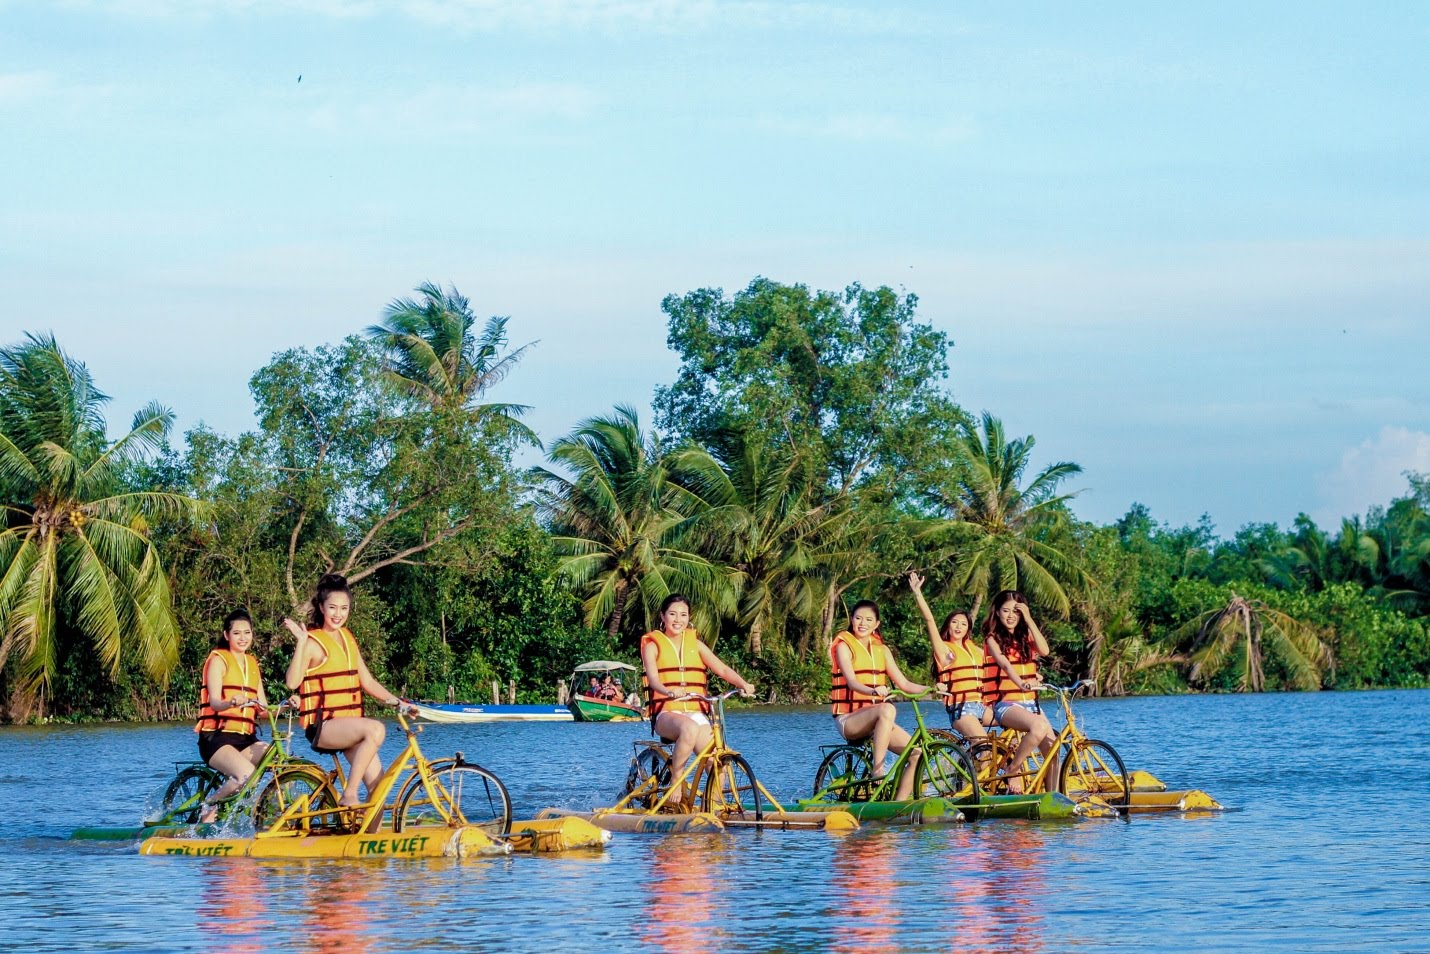 Làng du lịch Tre Việt là địa điểm du lịch gần Hồ Chí Minh nhất